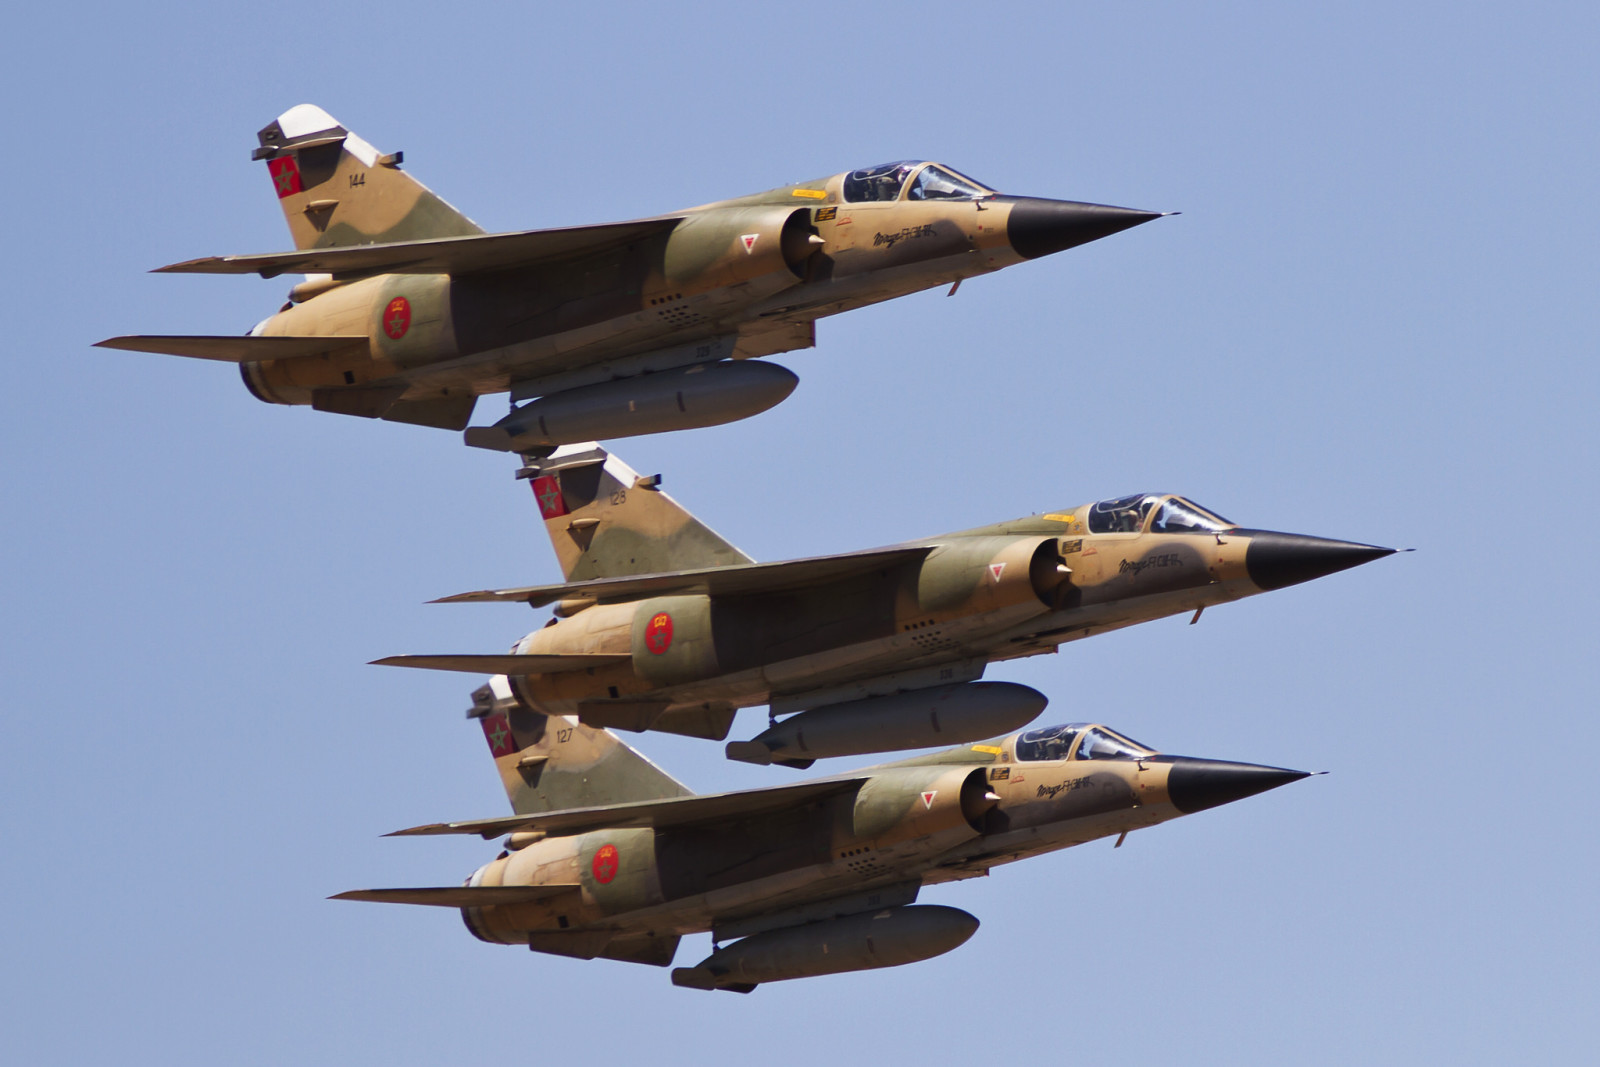 penerbangan, Pejuang, Maroko, Serba guna, "Mirage", Mirage F1